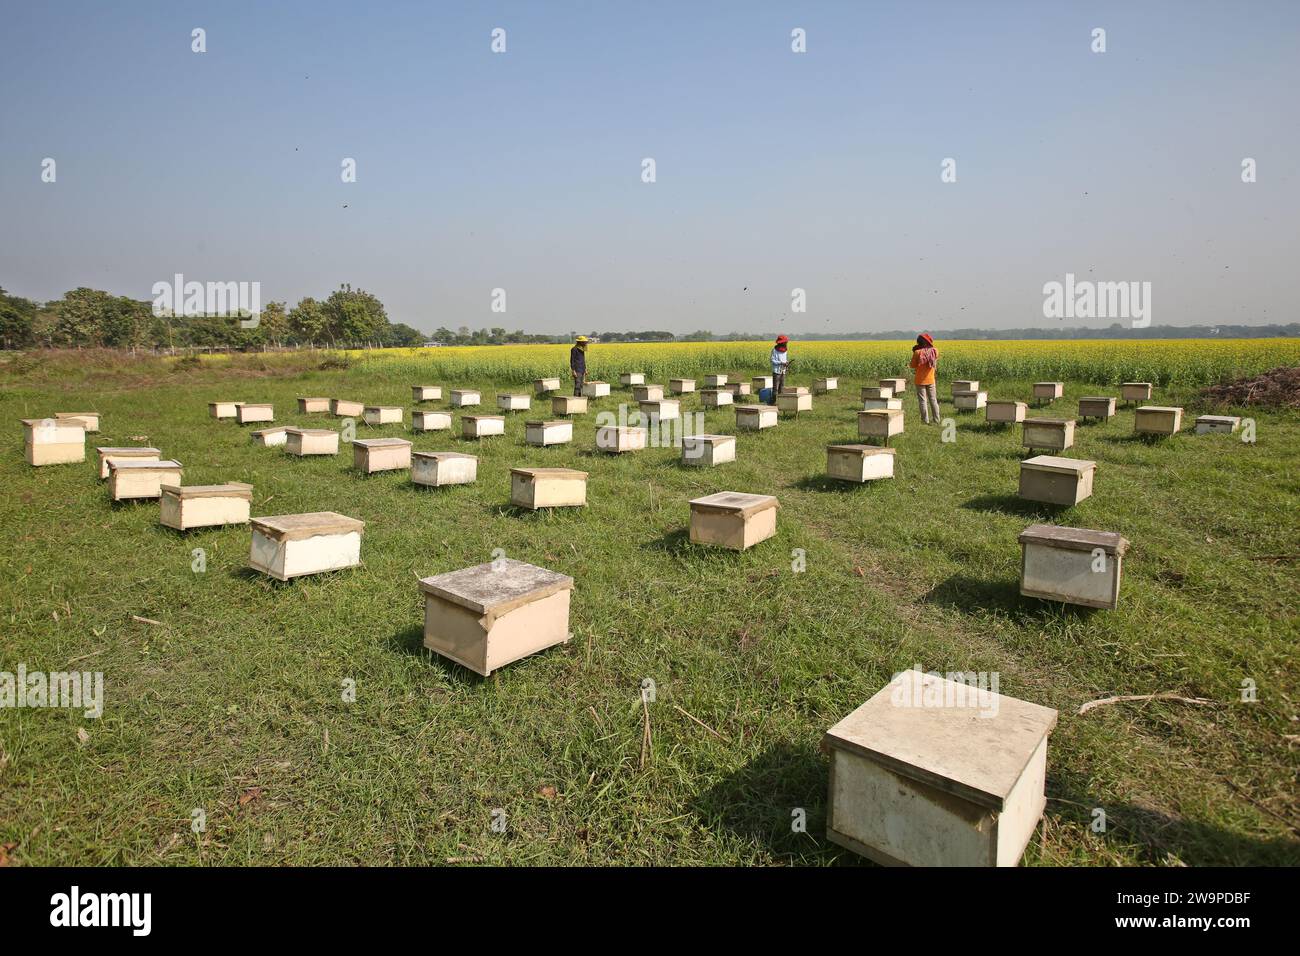 Apiculteurs lors de la collecte de nid d'abeille de la boîte spéciale pour extraire le miel produit par les abeilles dans un champ à Munshigonj. Selon le Bangladesh Banque D'Images